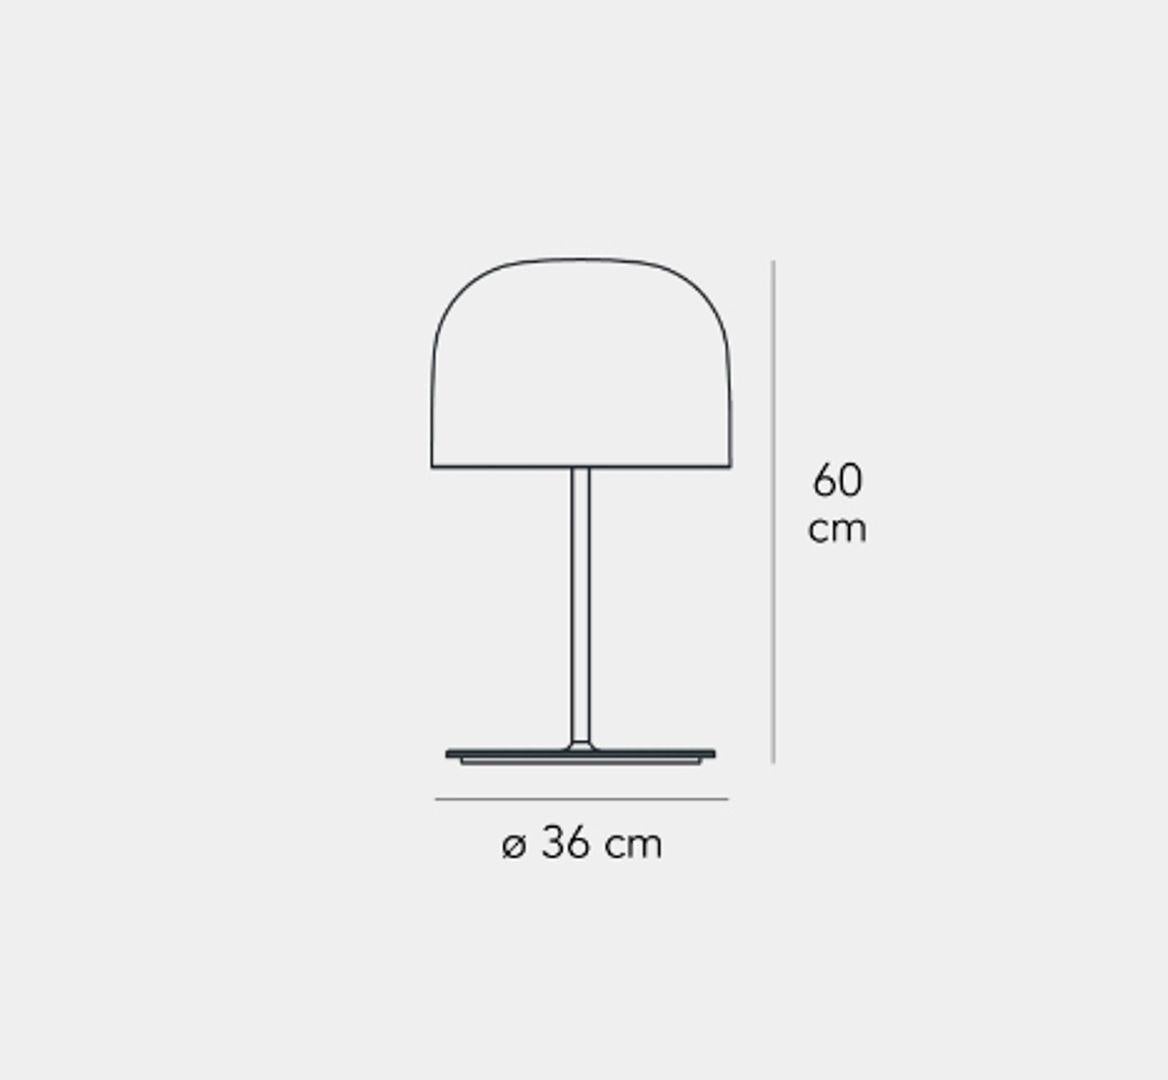 Equatore ist eine moderne Neuinterpretation der klassischen Lampe mit Glasschirm. Während bei der traditionellen Abat-Jour der Schirm die Lichtquelle einschließt, ist er bei dieser Lampenfamilie paradoxerweise leer. Das Licht wird von zwei